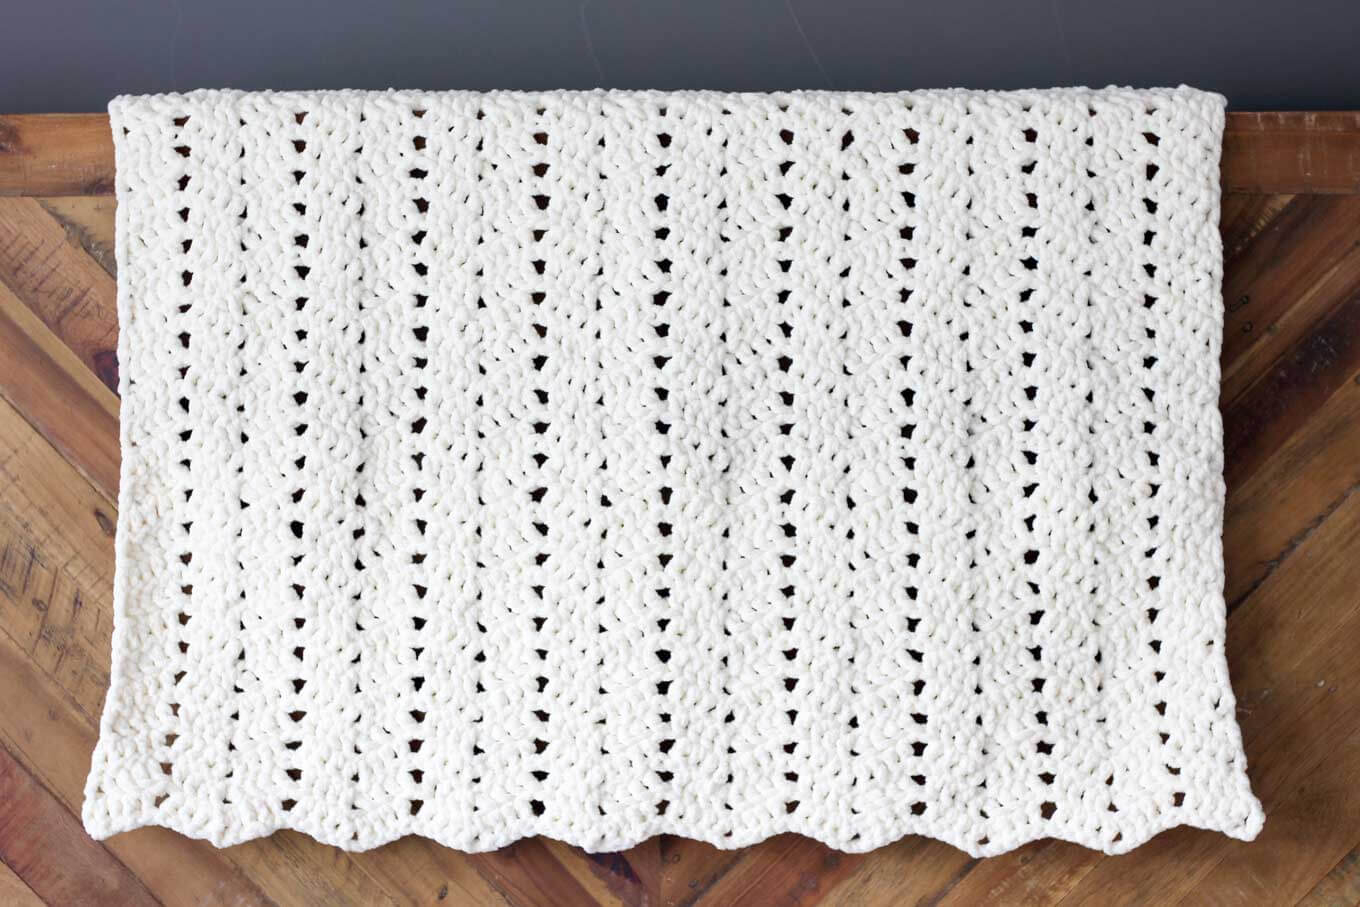 Free Knitting Patterns For Beginners Uk Free Modern Chunky Crochet Blanket Pattern Beginner Friendly